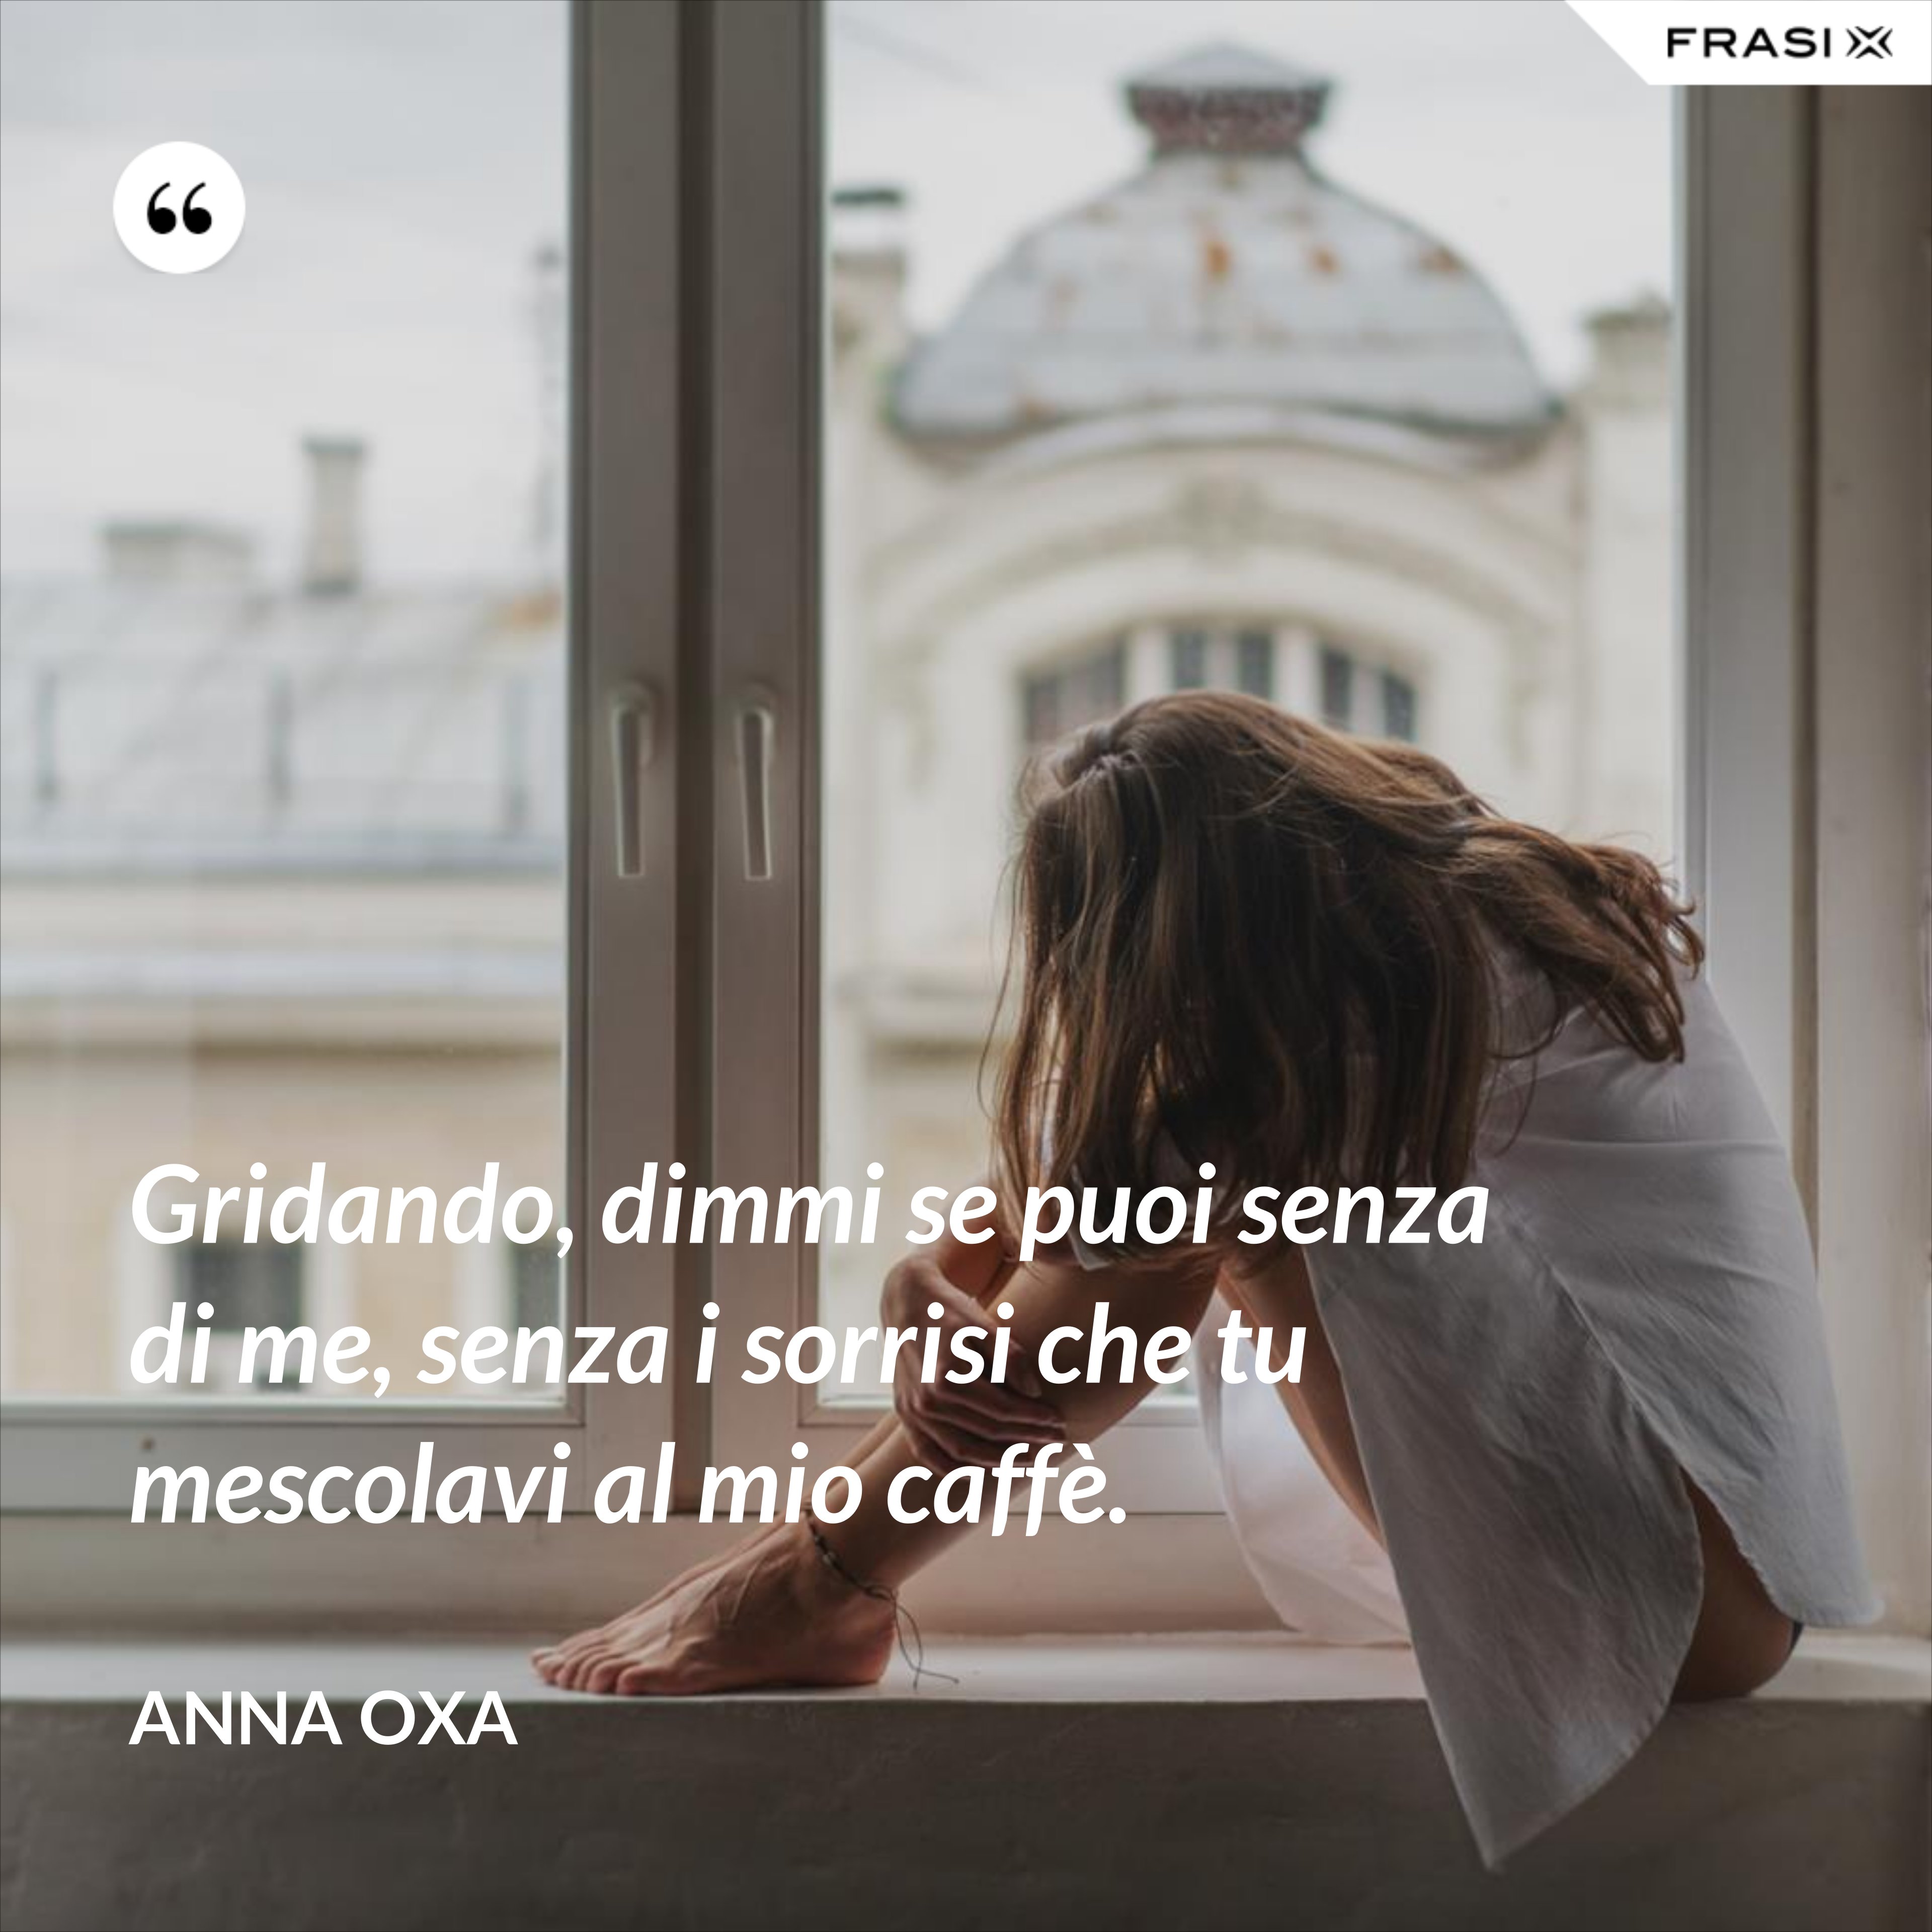 Gridando, dimmi se puoi senza di me, senza i sorrisi che tu mescolavi al mio caffè. - Anna Oxa